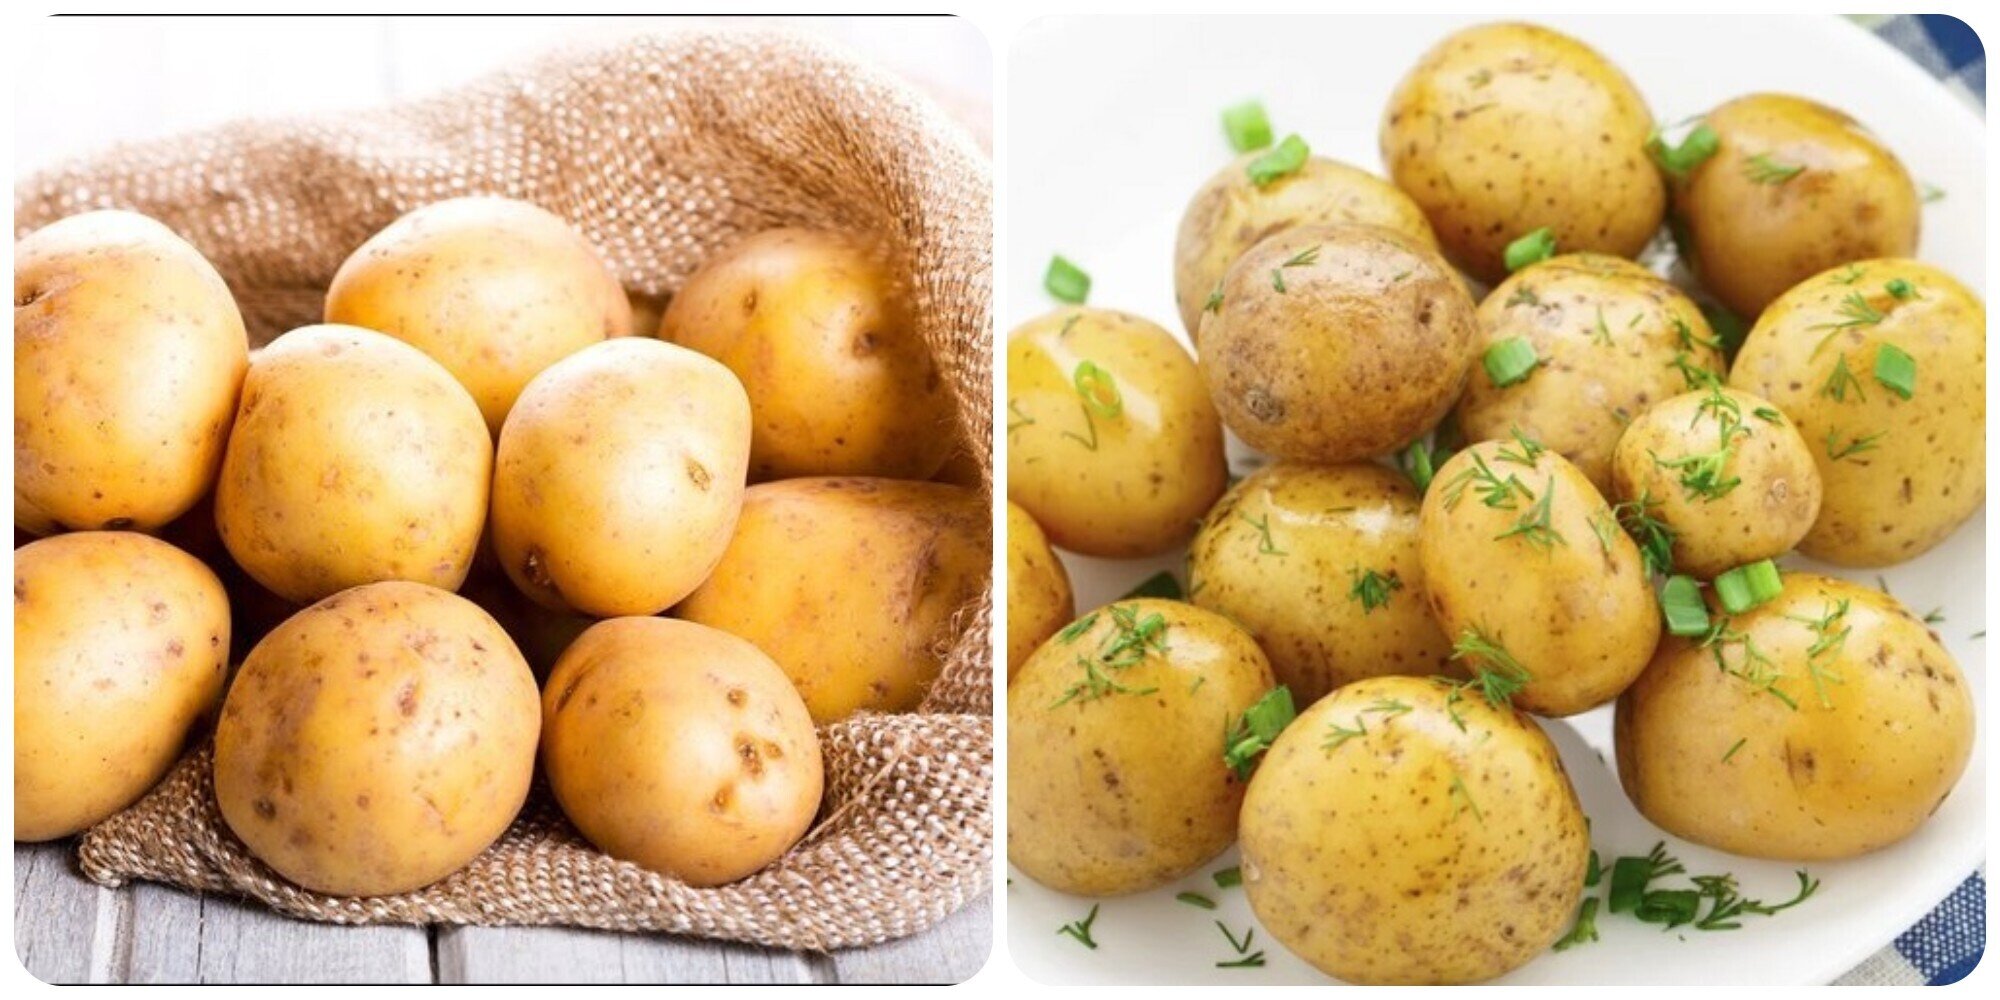 5 tác hại của khoai tây với sức khỏe nếu bạn ăn quá nhiều - 1